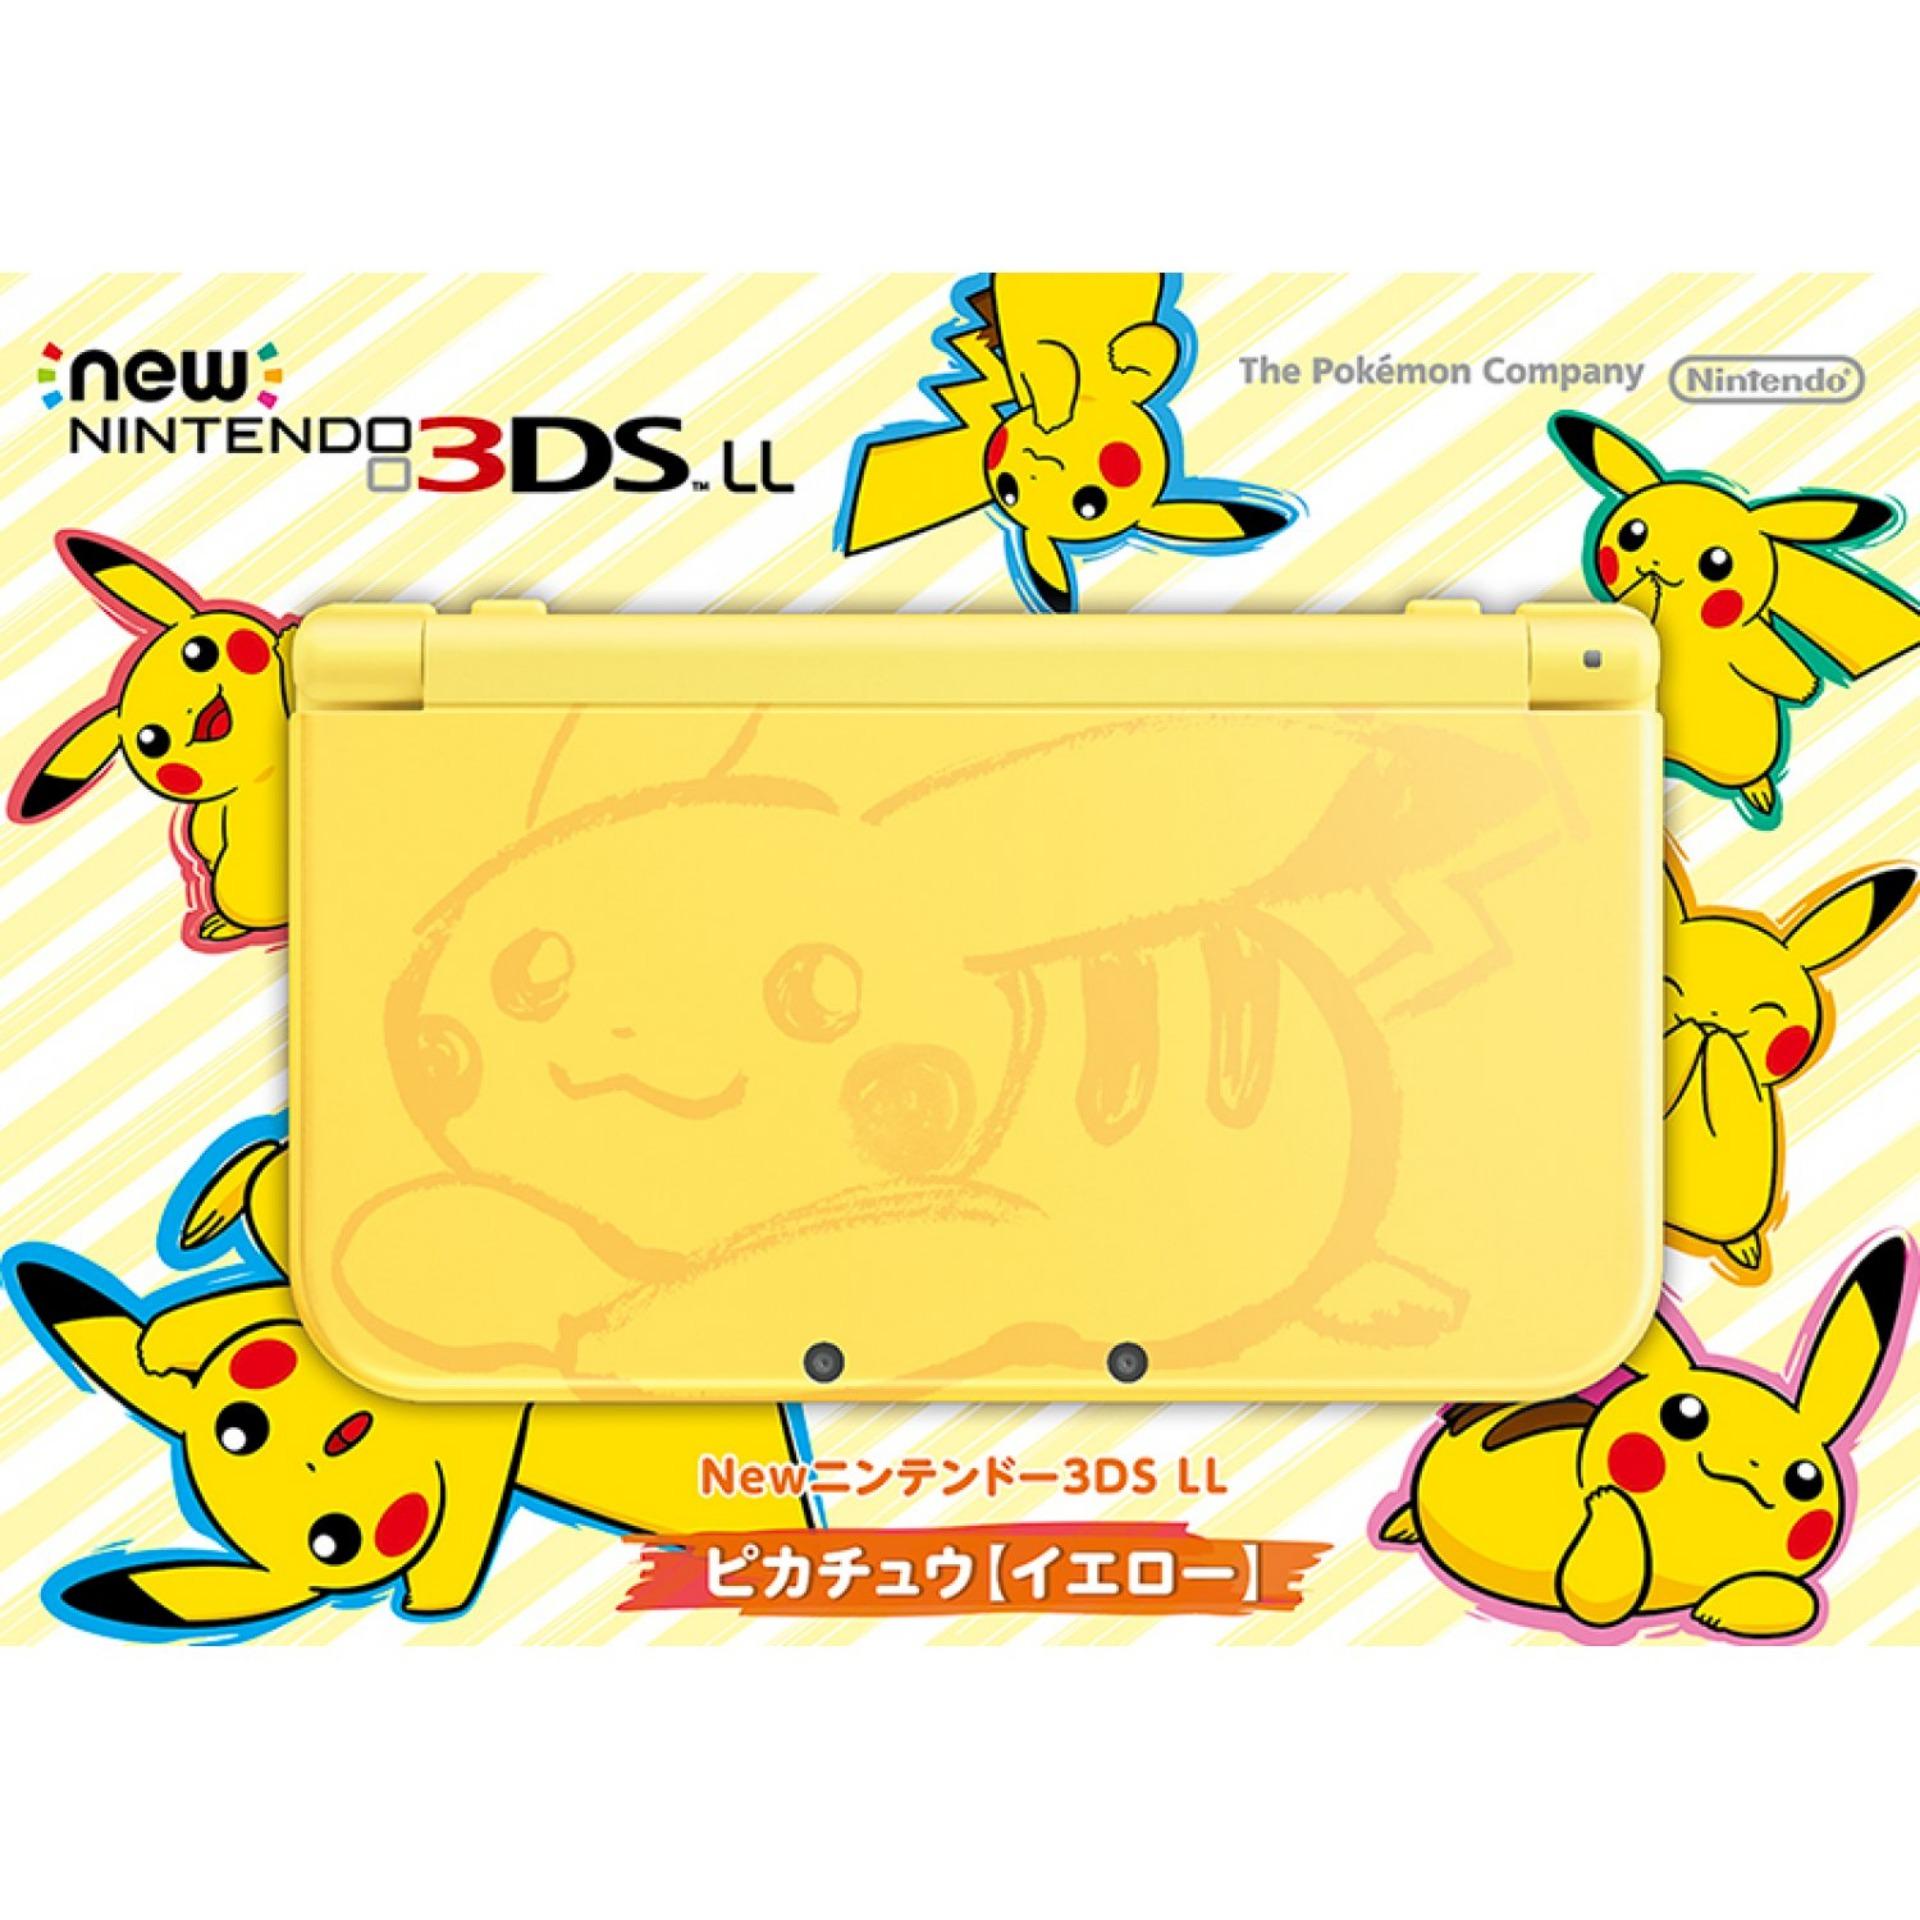 Máy Chơi Game Nintendo New 3DS LL Pikachu Edition và Thẻ nhớ 32G (Hacked English)